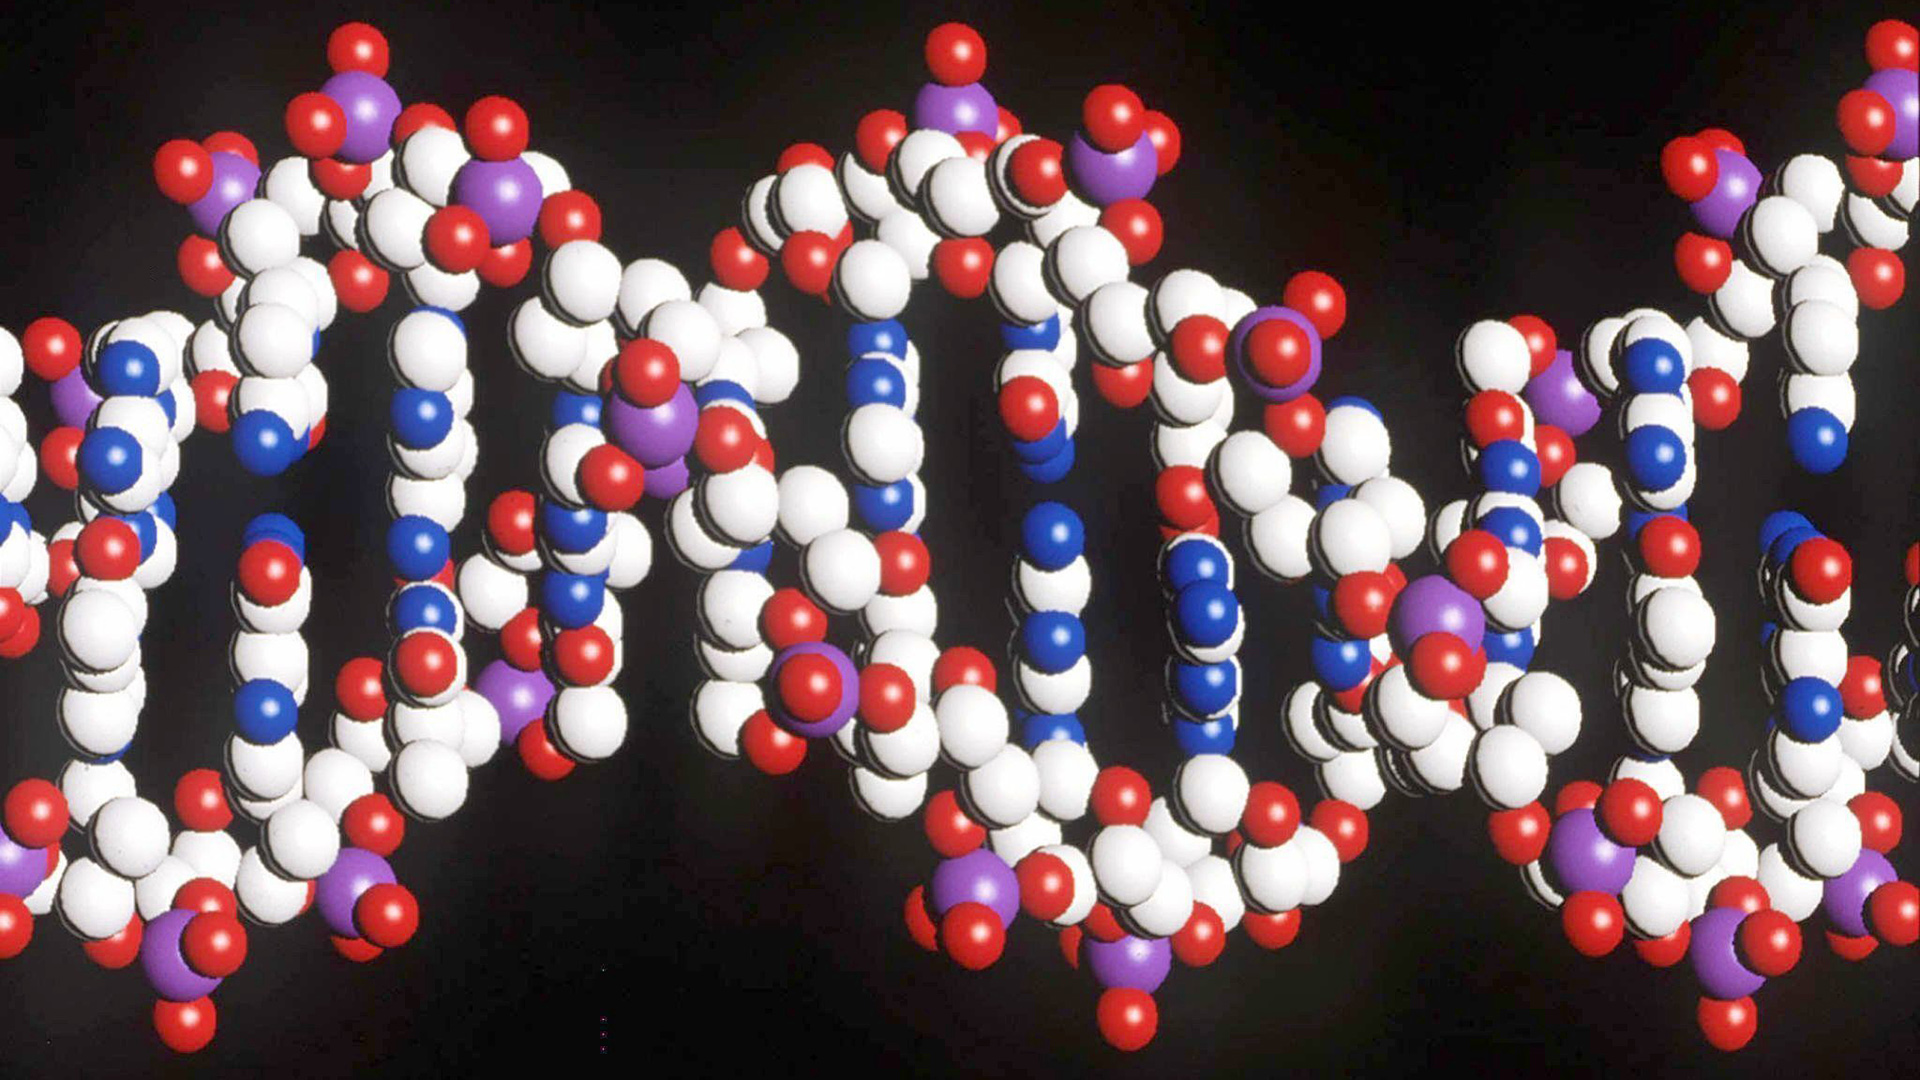 Modell eines menschlichen DNA-Stranges mit der doppelten Helix-Struktur | picture-alliance / dpa